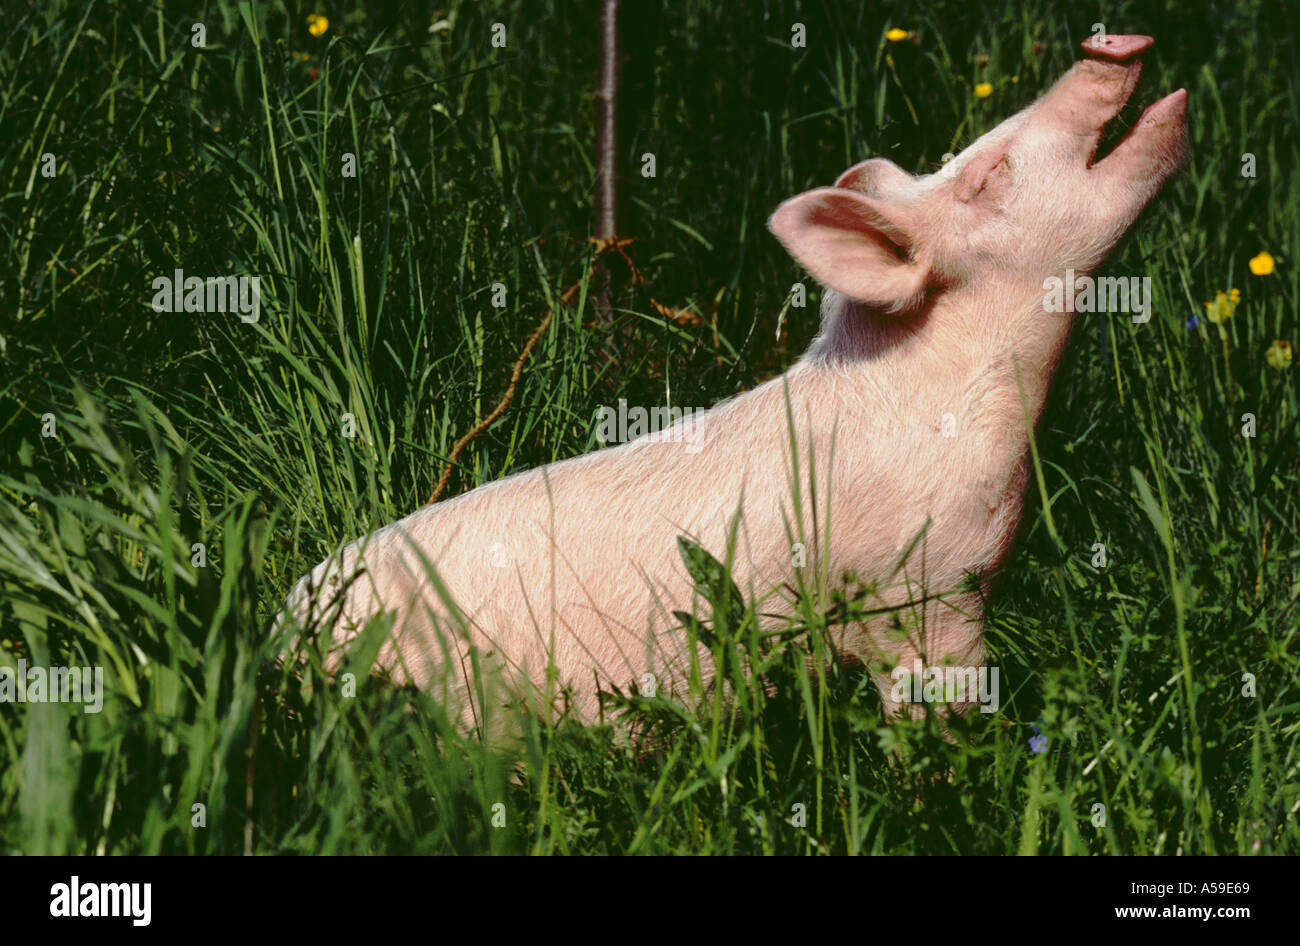 Junge Ferkel Schwein Tier Kreatur Kreaturen Säugetiere Säugetier Schwein Schweine Ferkel Ferkel im freien Animal Farm Stockfoto